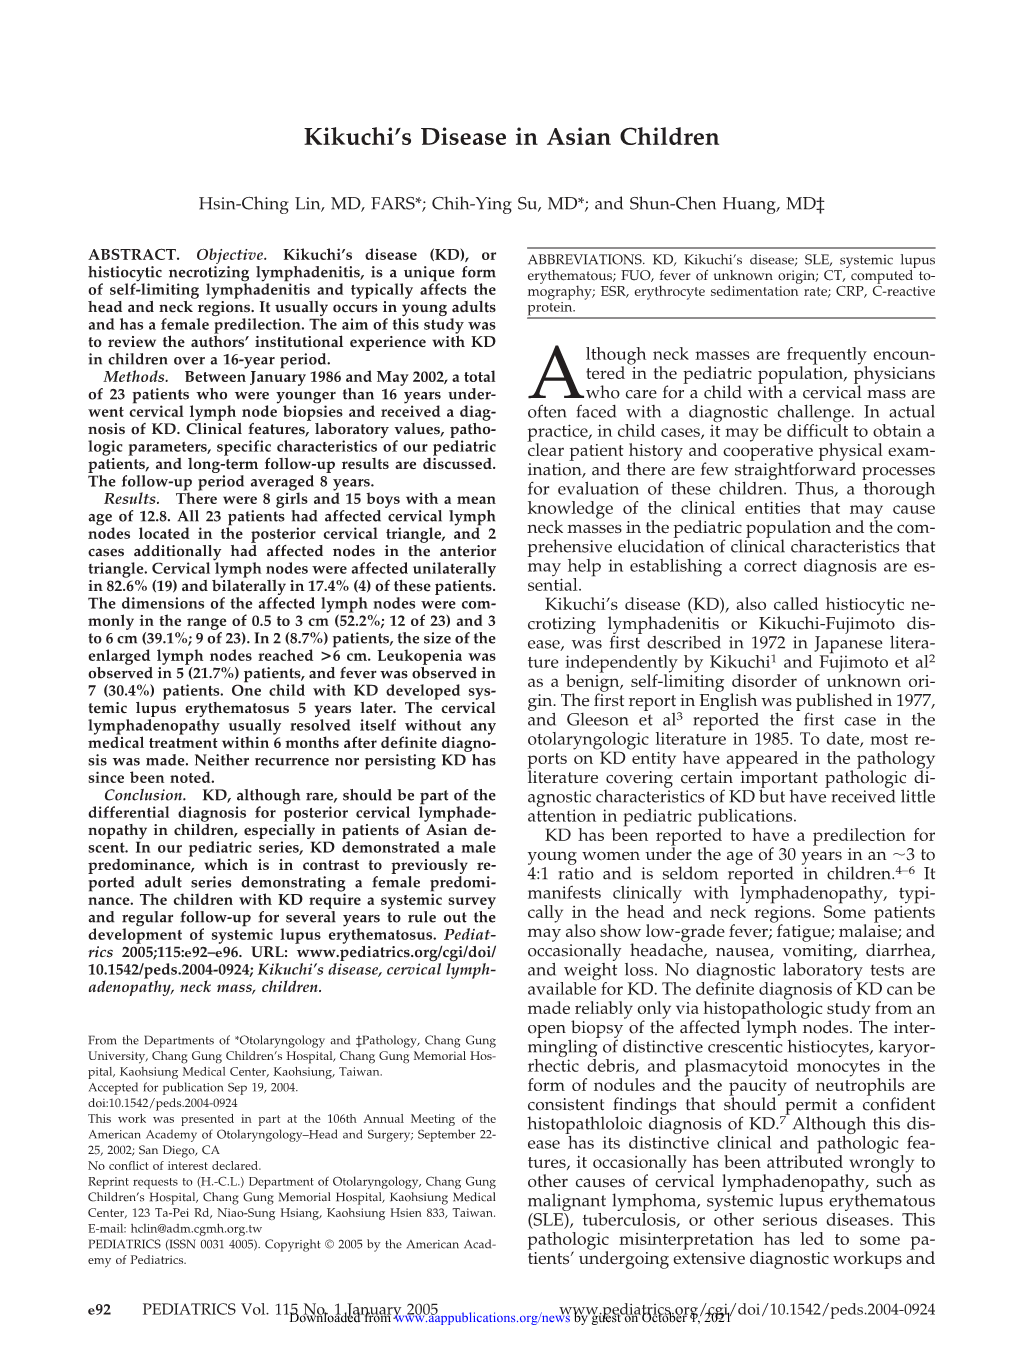 Kikuchi's Disease in Asian Children Hsin-Ching Lin, Chih-Ying Su and Shun-Chen Huang Pediatrics 2005;115;E92 DOI: 10.1542/Peds.2004-0924